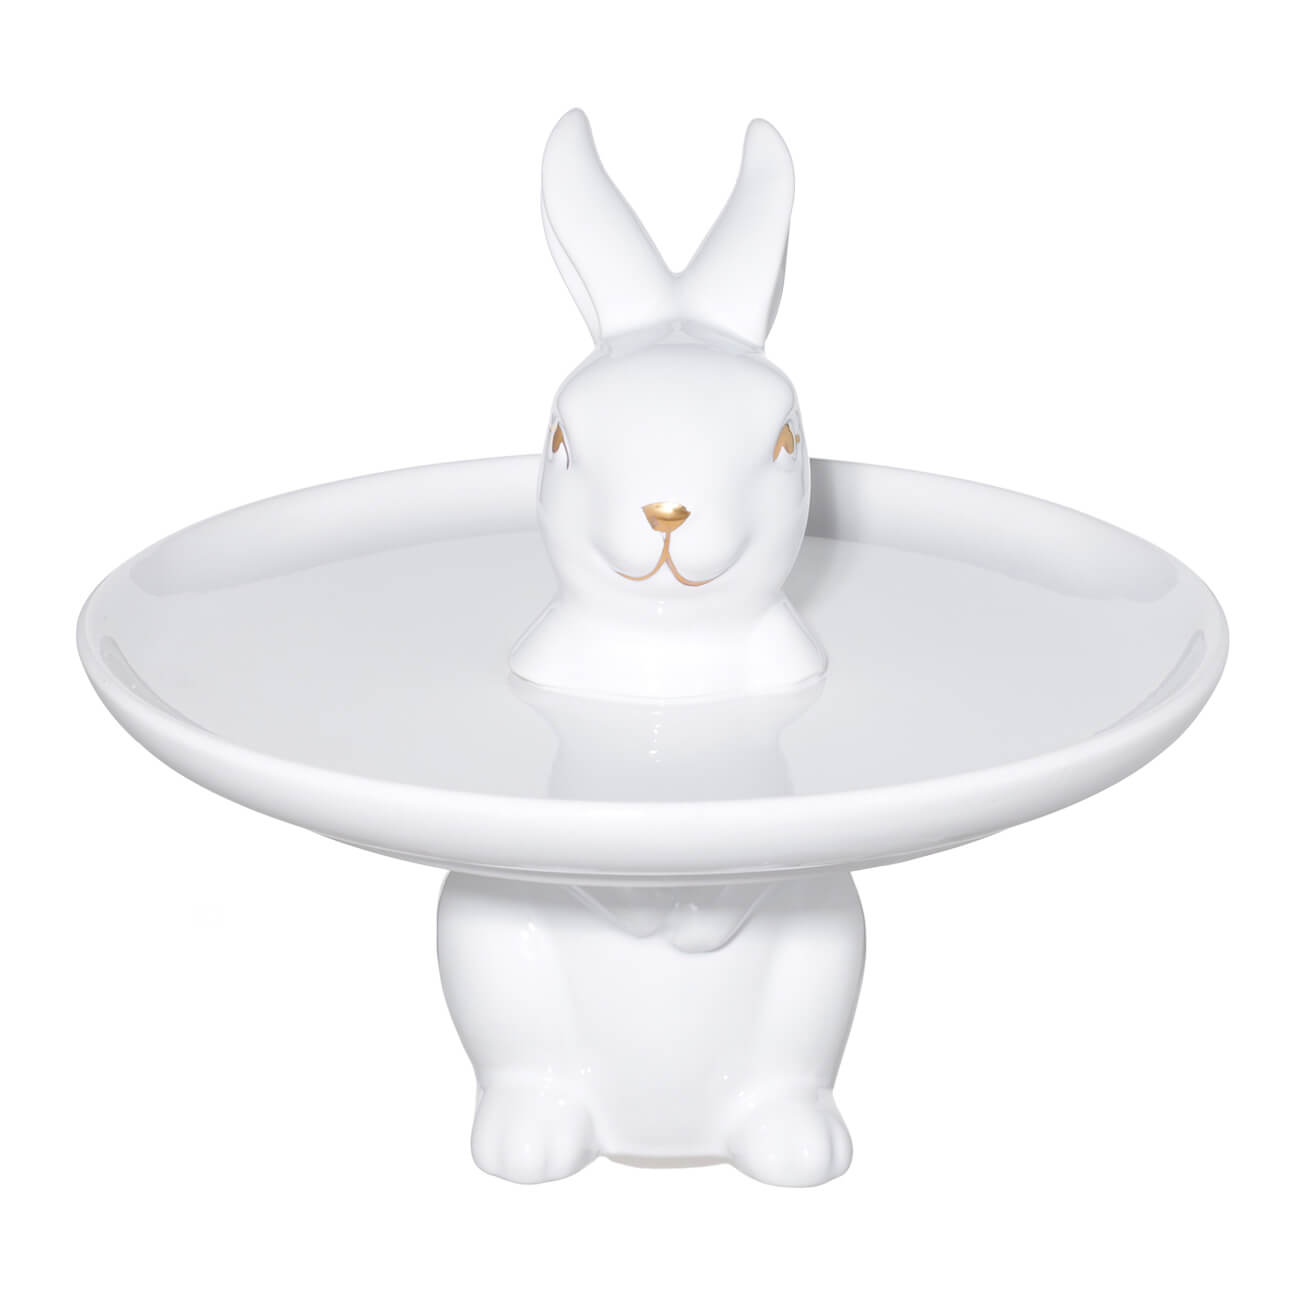 Блюдо на ножке, 18х17 см, керамика, белое, Кролик стоит, Easter gold - фото 1